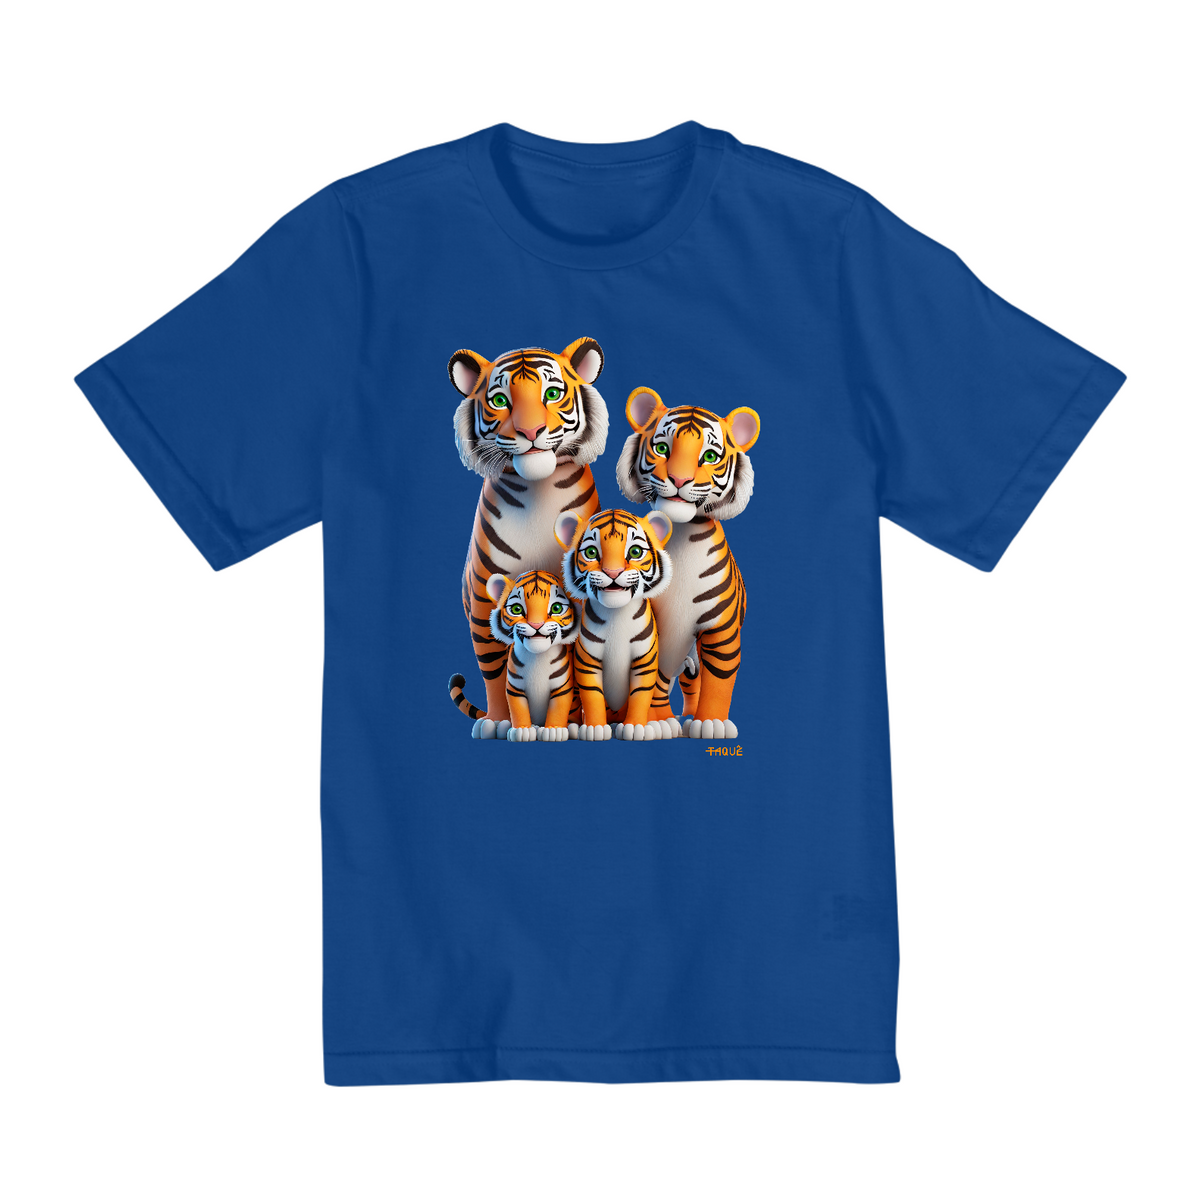 Nome do produto: Camiseta Infantil Quality Familia Tigrinhos